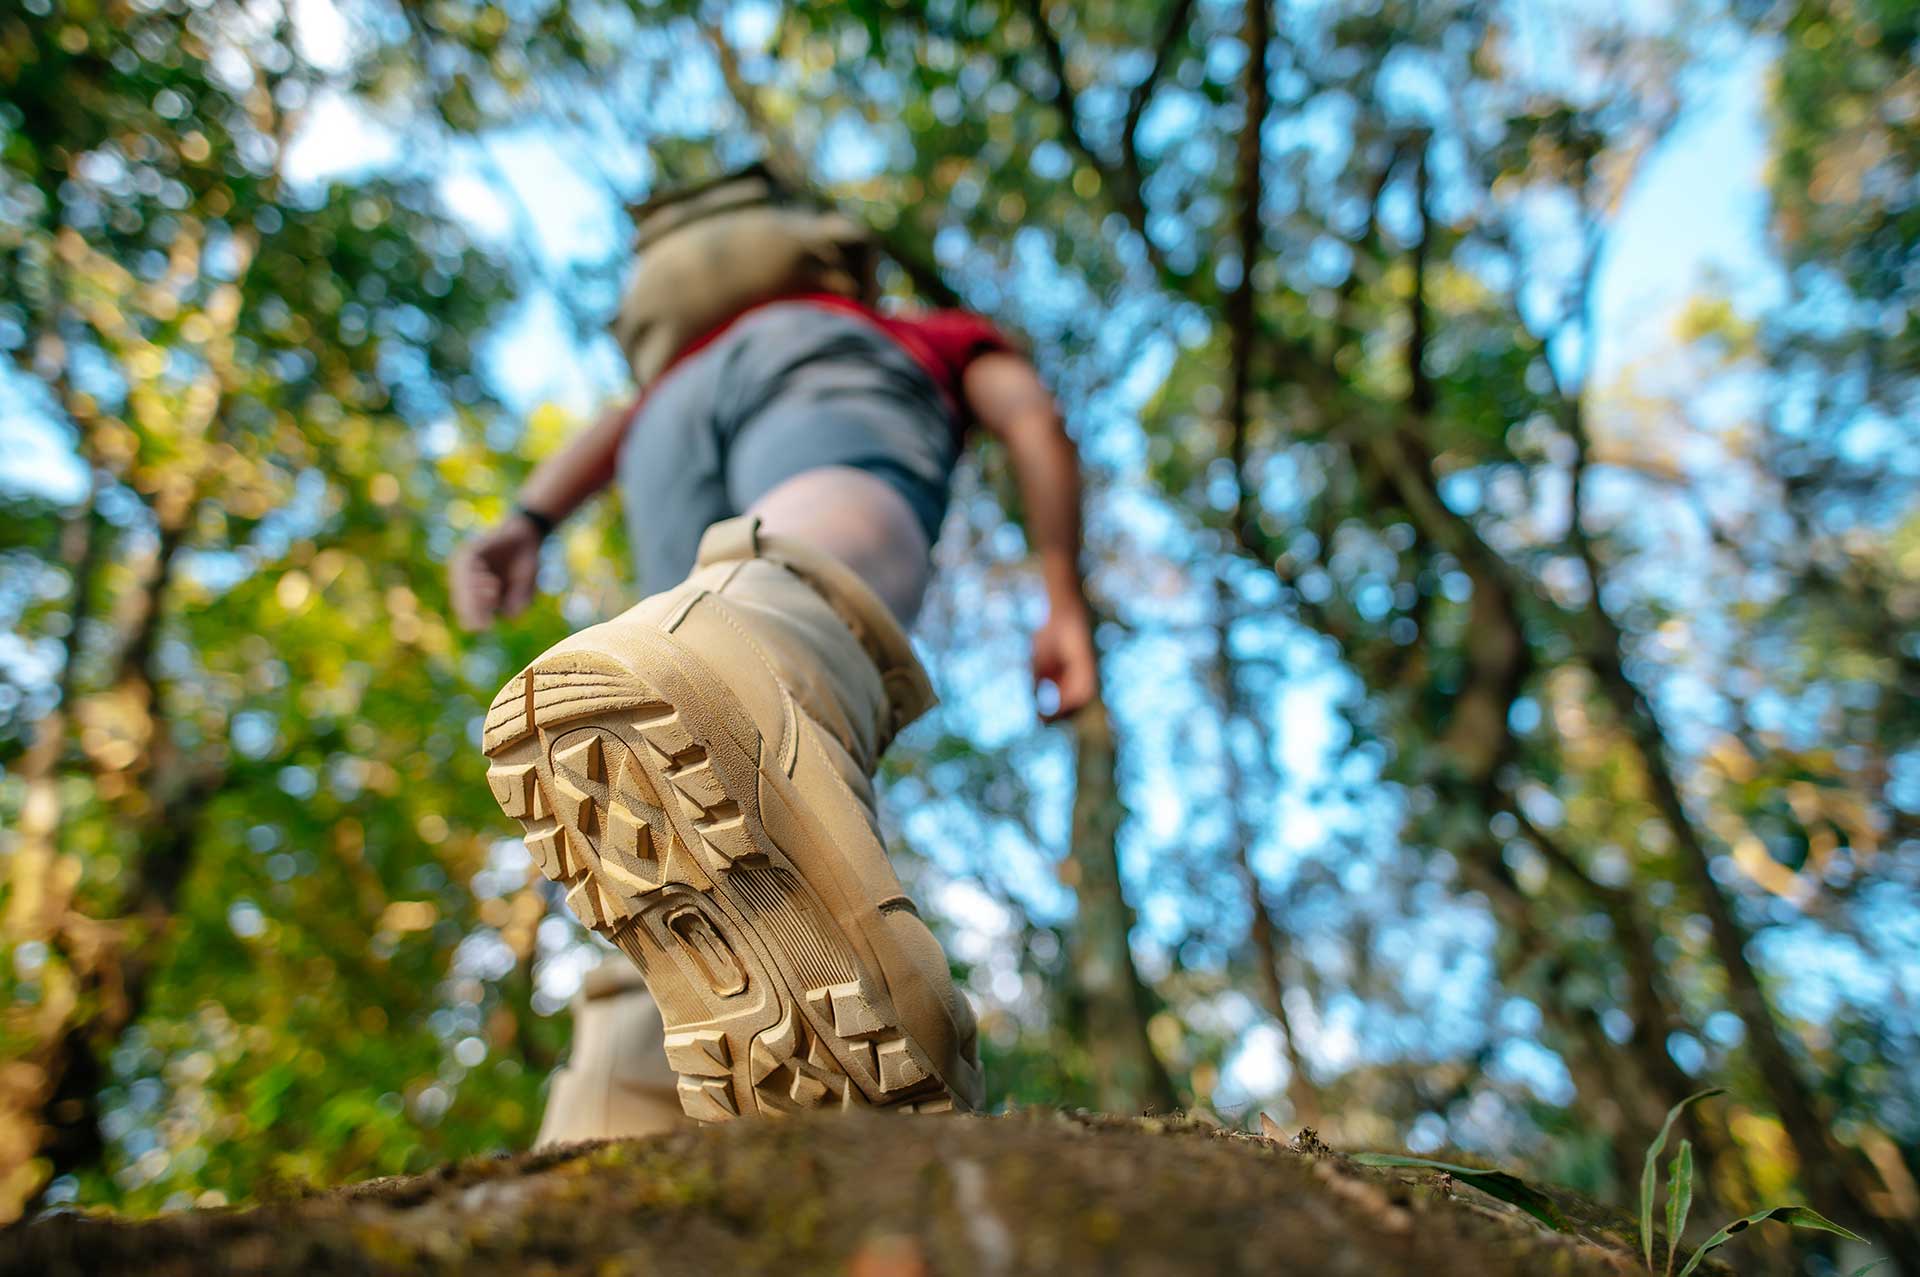 Zapatillas, medias botas, botas. Cómo elegir tu calzado de trekking y  senderismo 